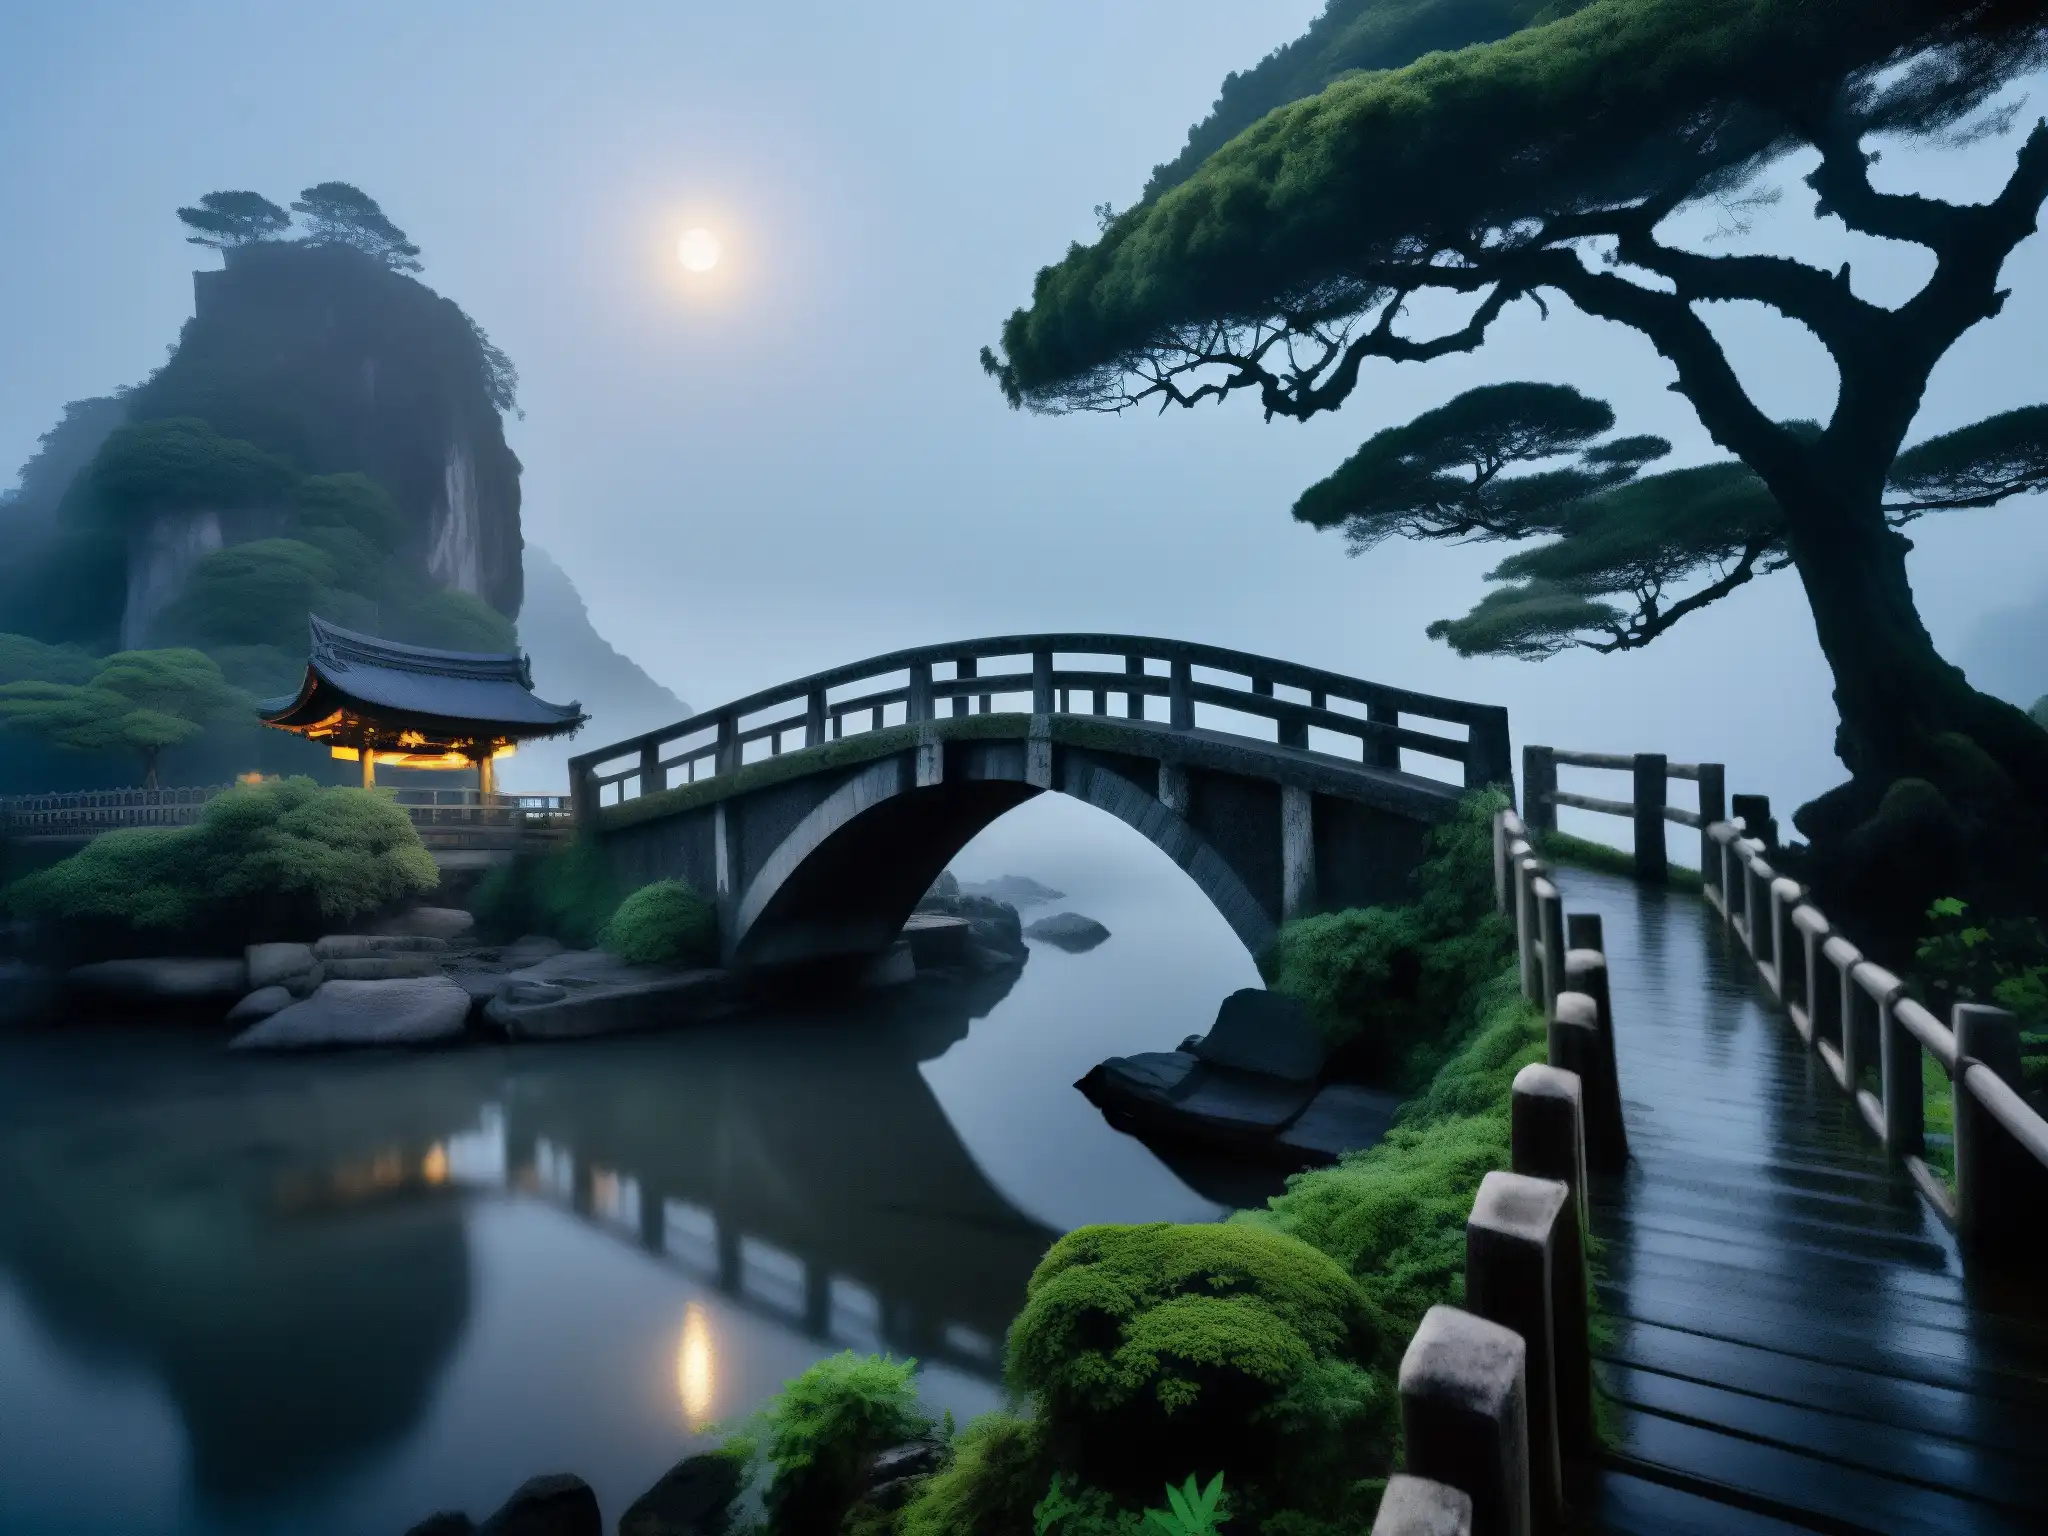 Un puente antiguo y misterioso, la niebla rodea la leyenda Saruhashi cultura actual en la noche